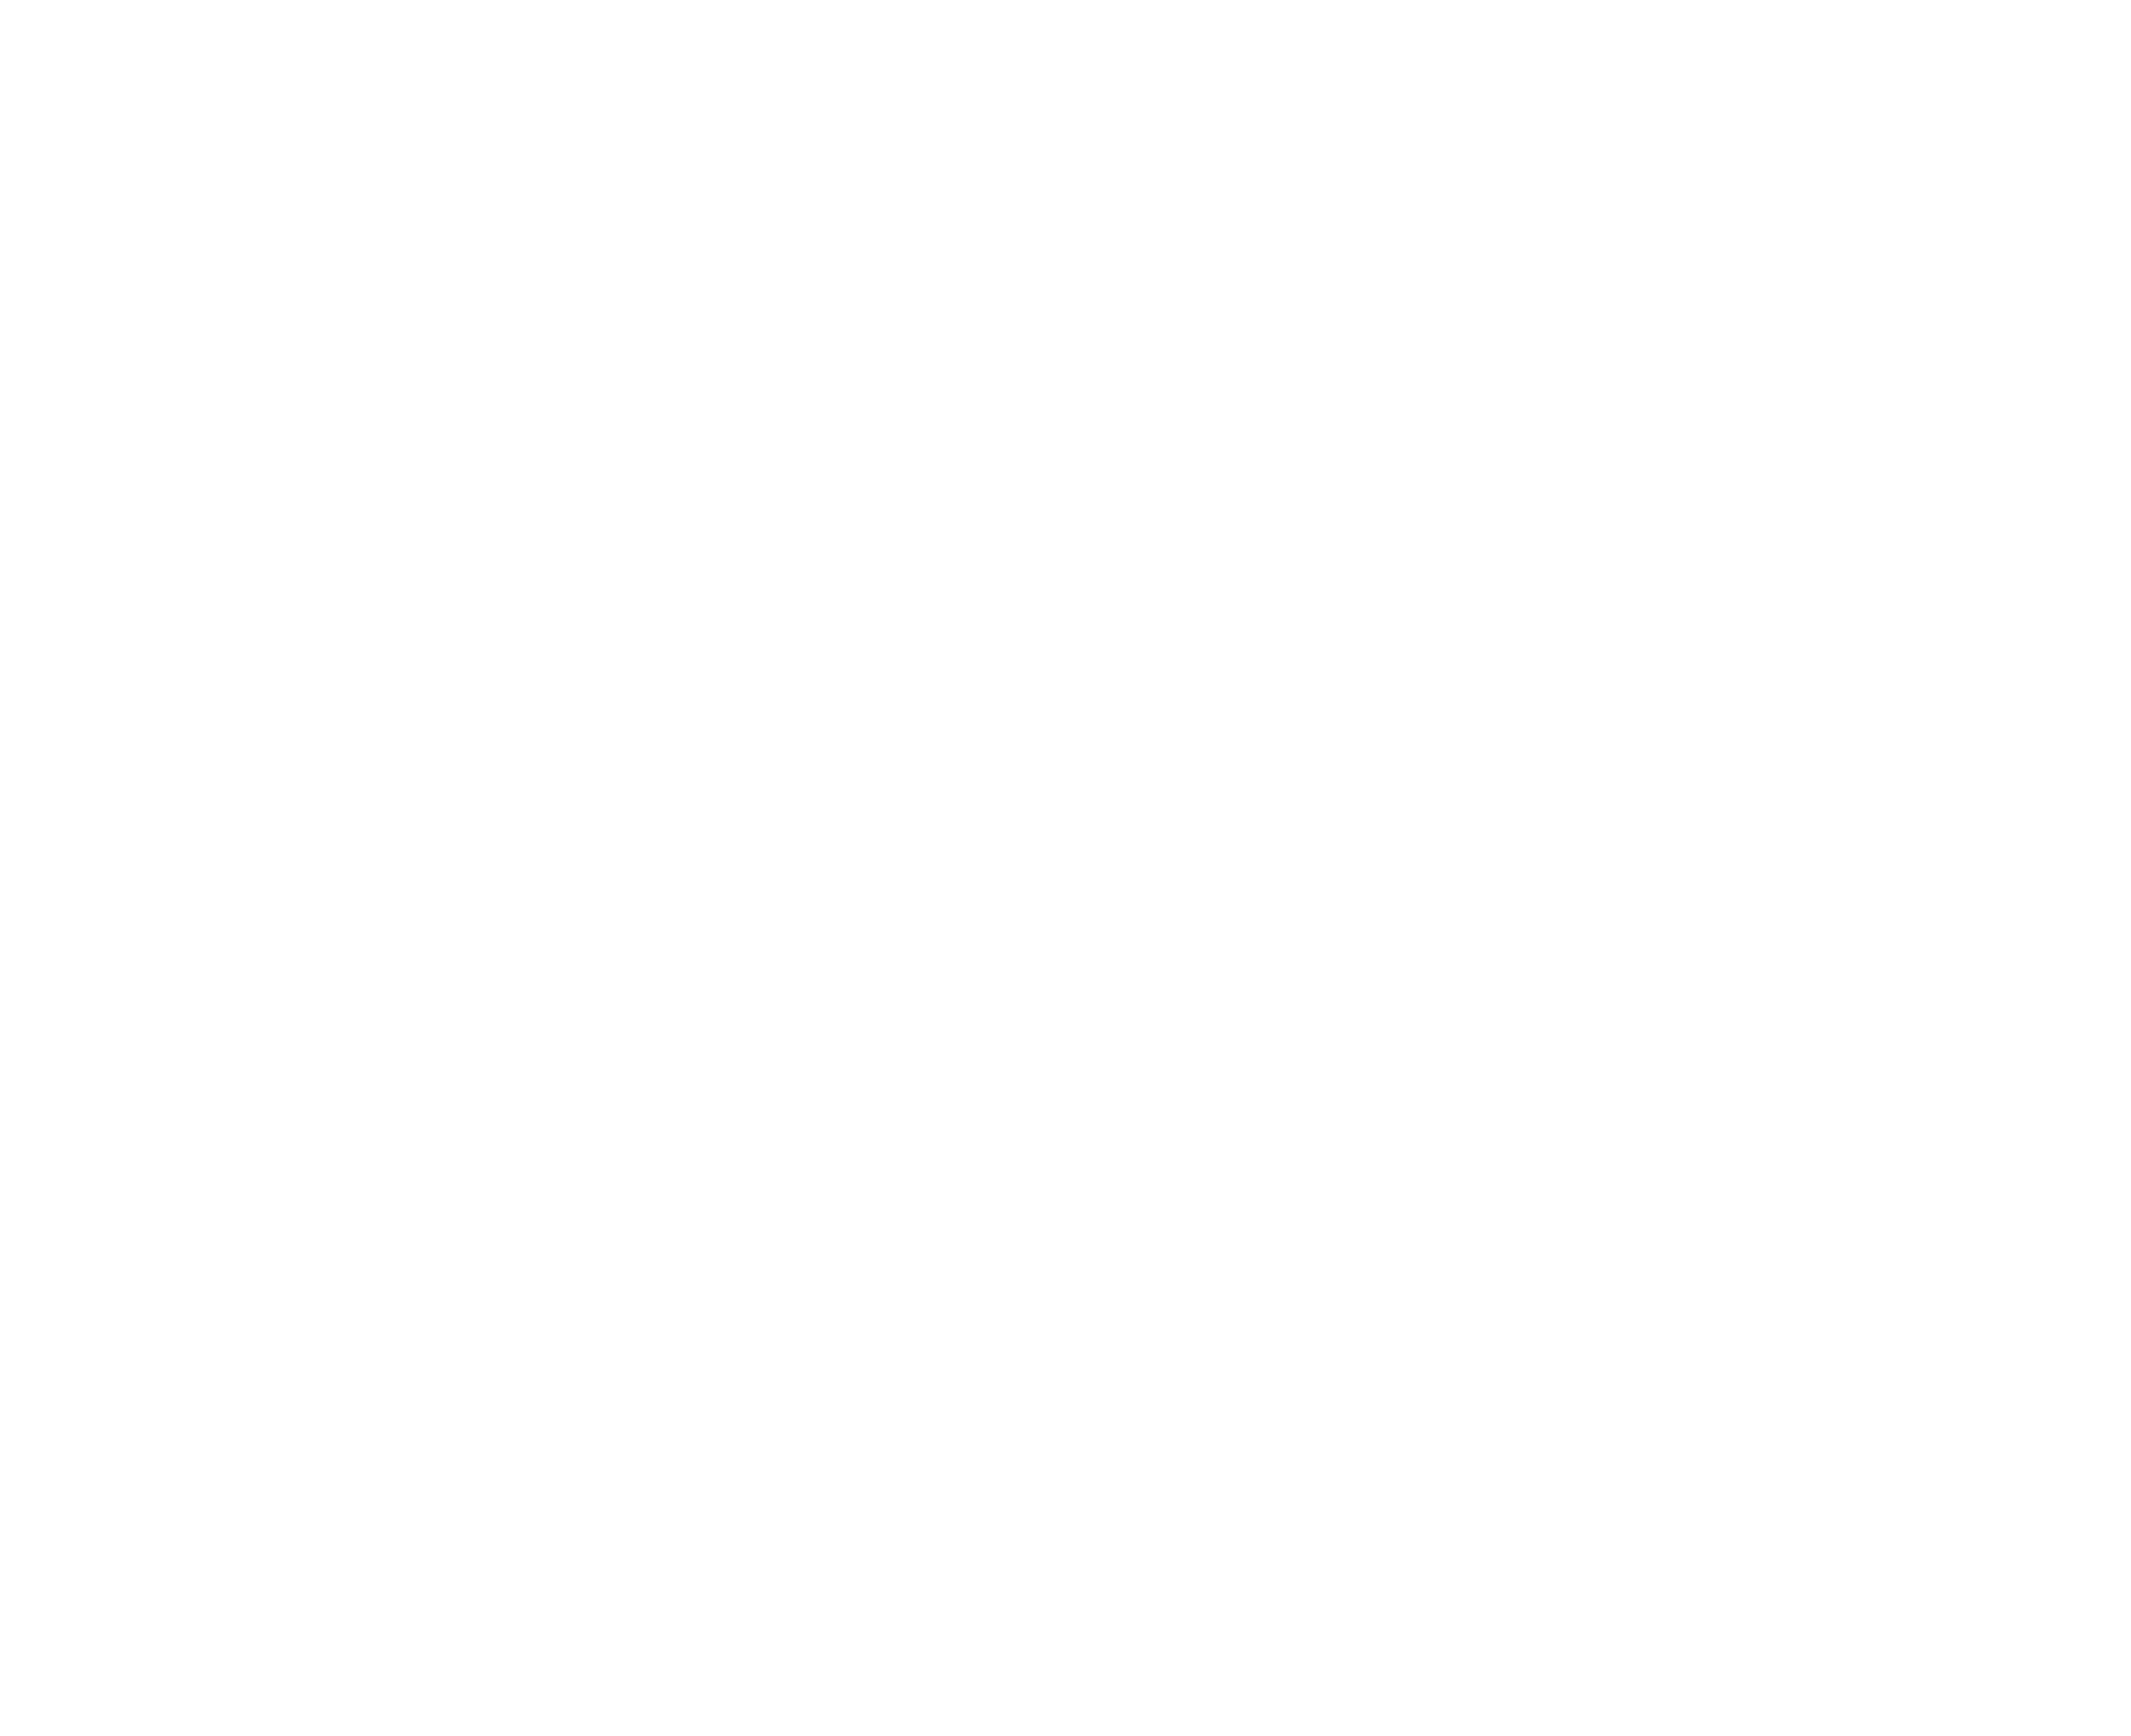 SageMatrix